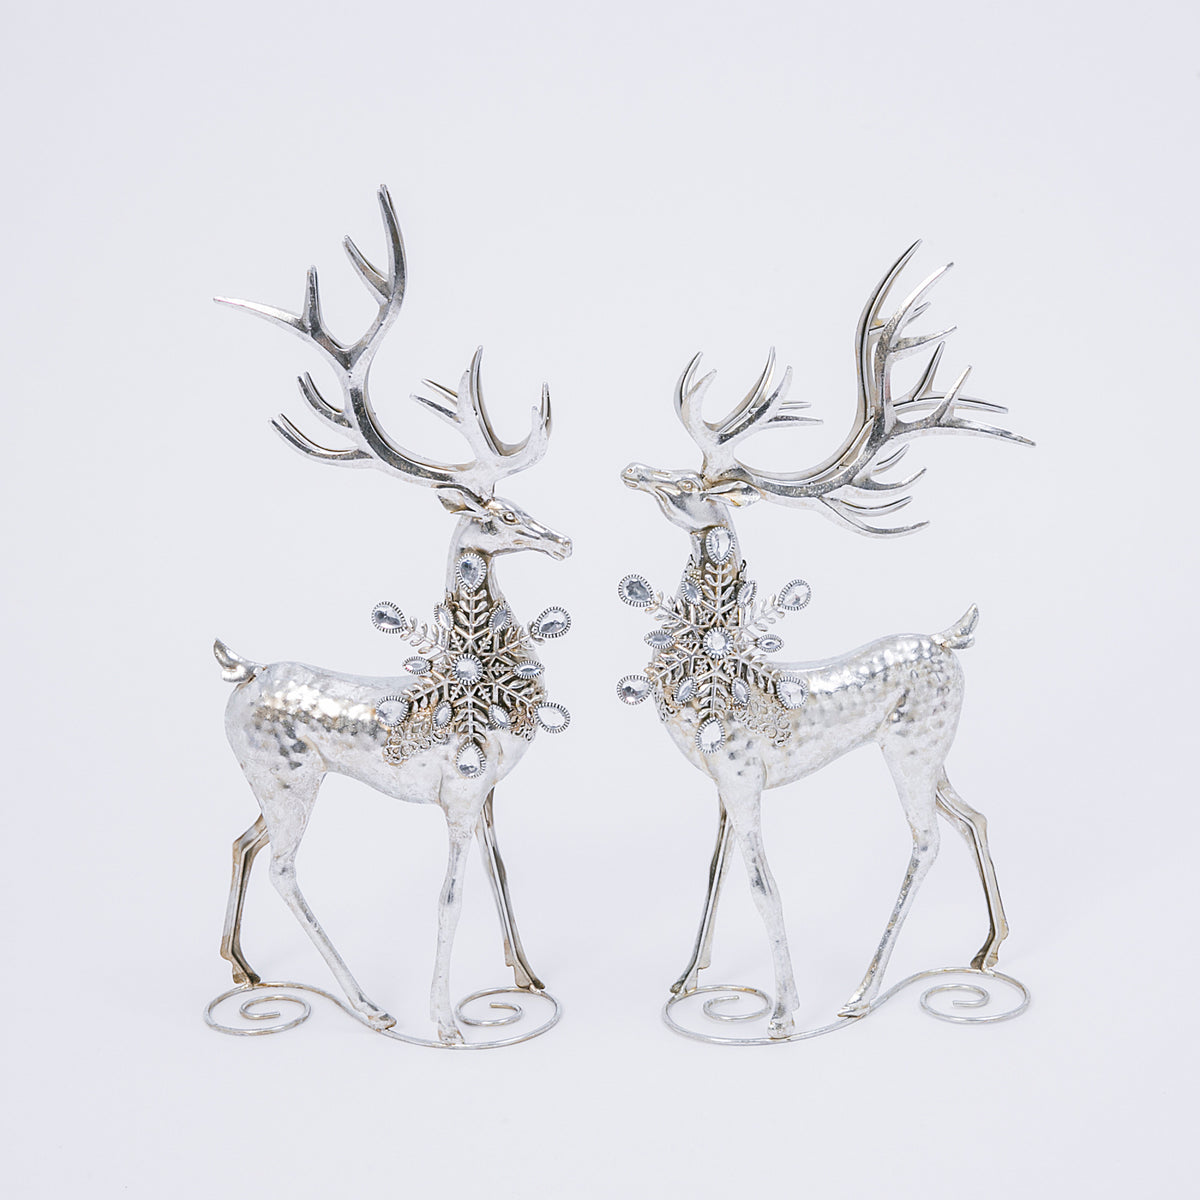 20"H Metal Silver Deer Figurines